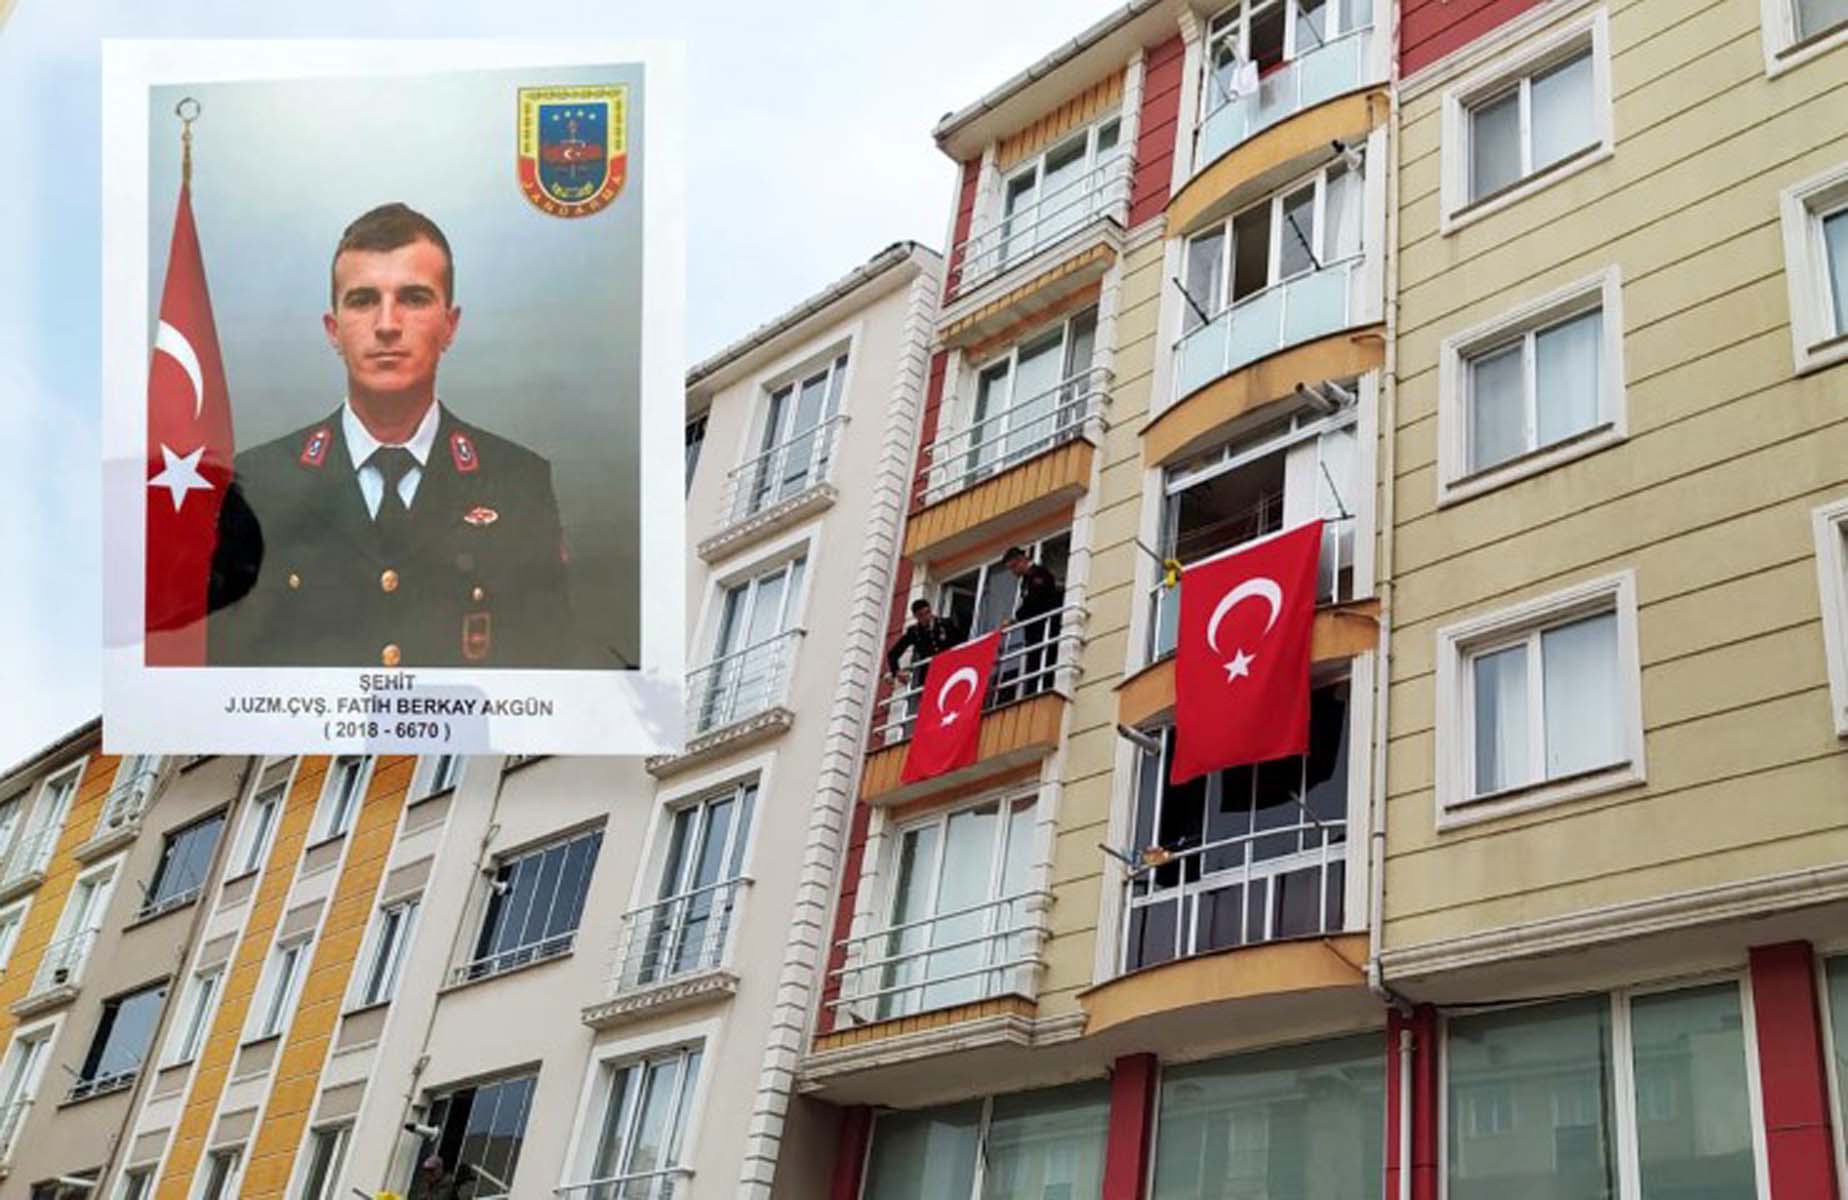 Son dakika | İçişleri Bakanlığı acı haberi duyurdu: Jandarma Uzman Çavuş Fatih Berkay Akgün şehit oldu